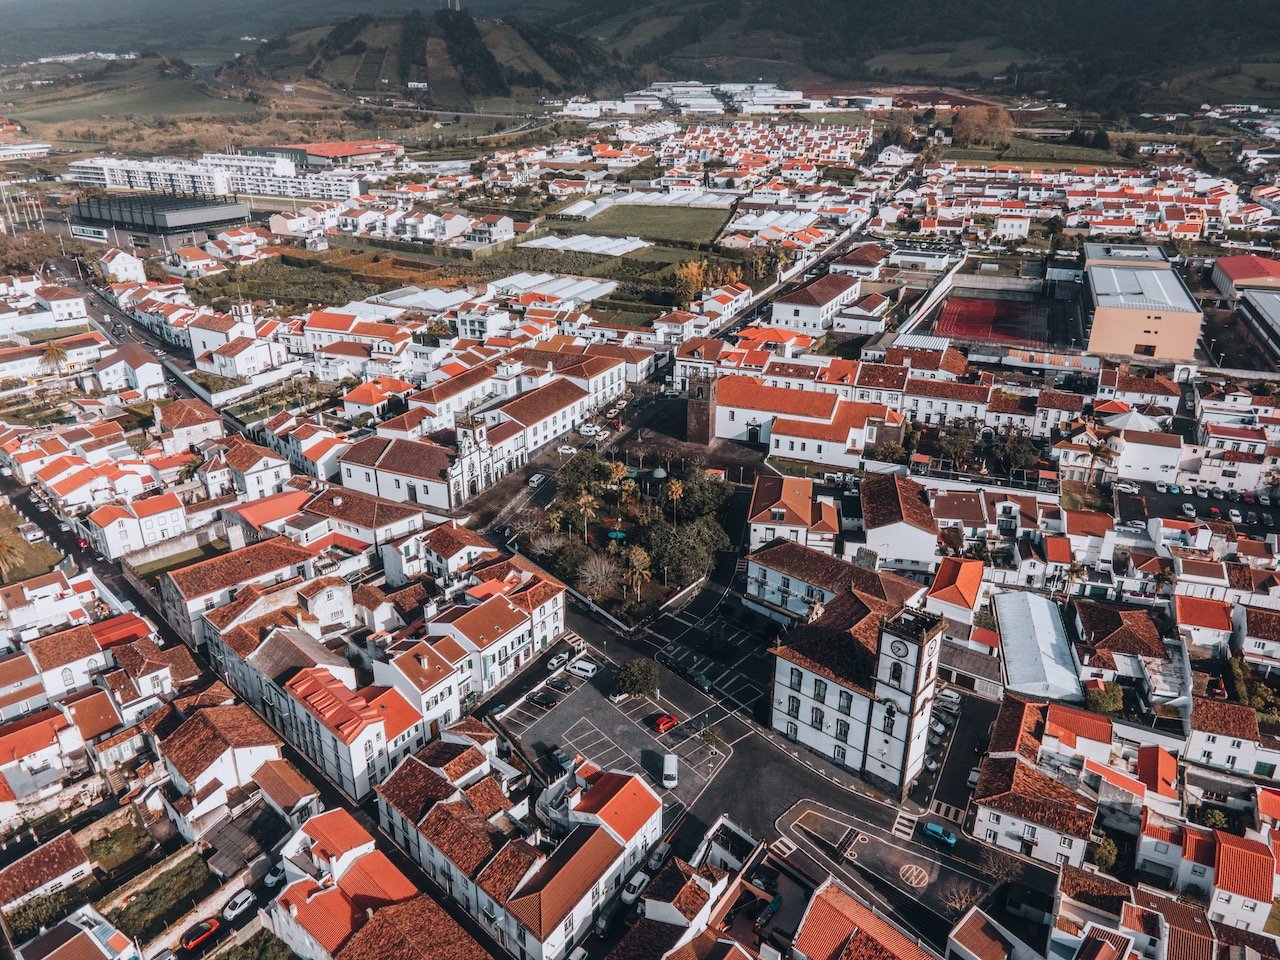   Vila Franca do Campo, São Miguel, the Azores (ISO 100, 4.5 mm,  f /2.8, 1/60 s)  